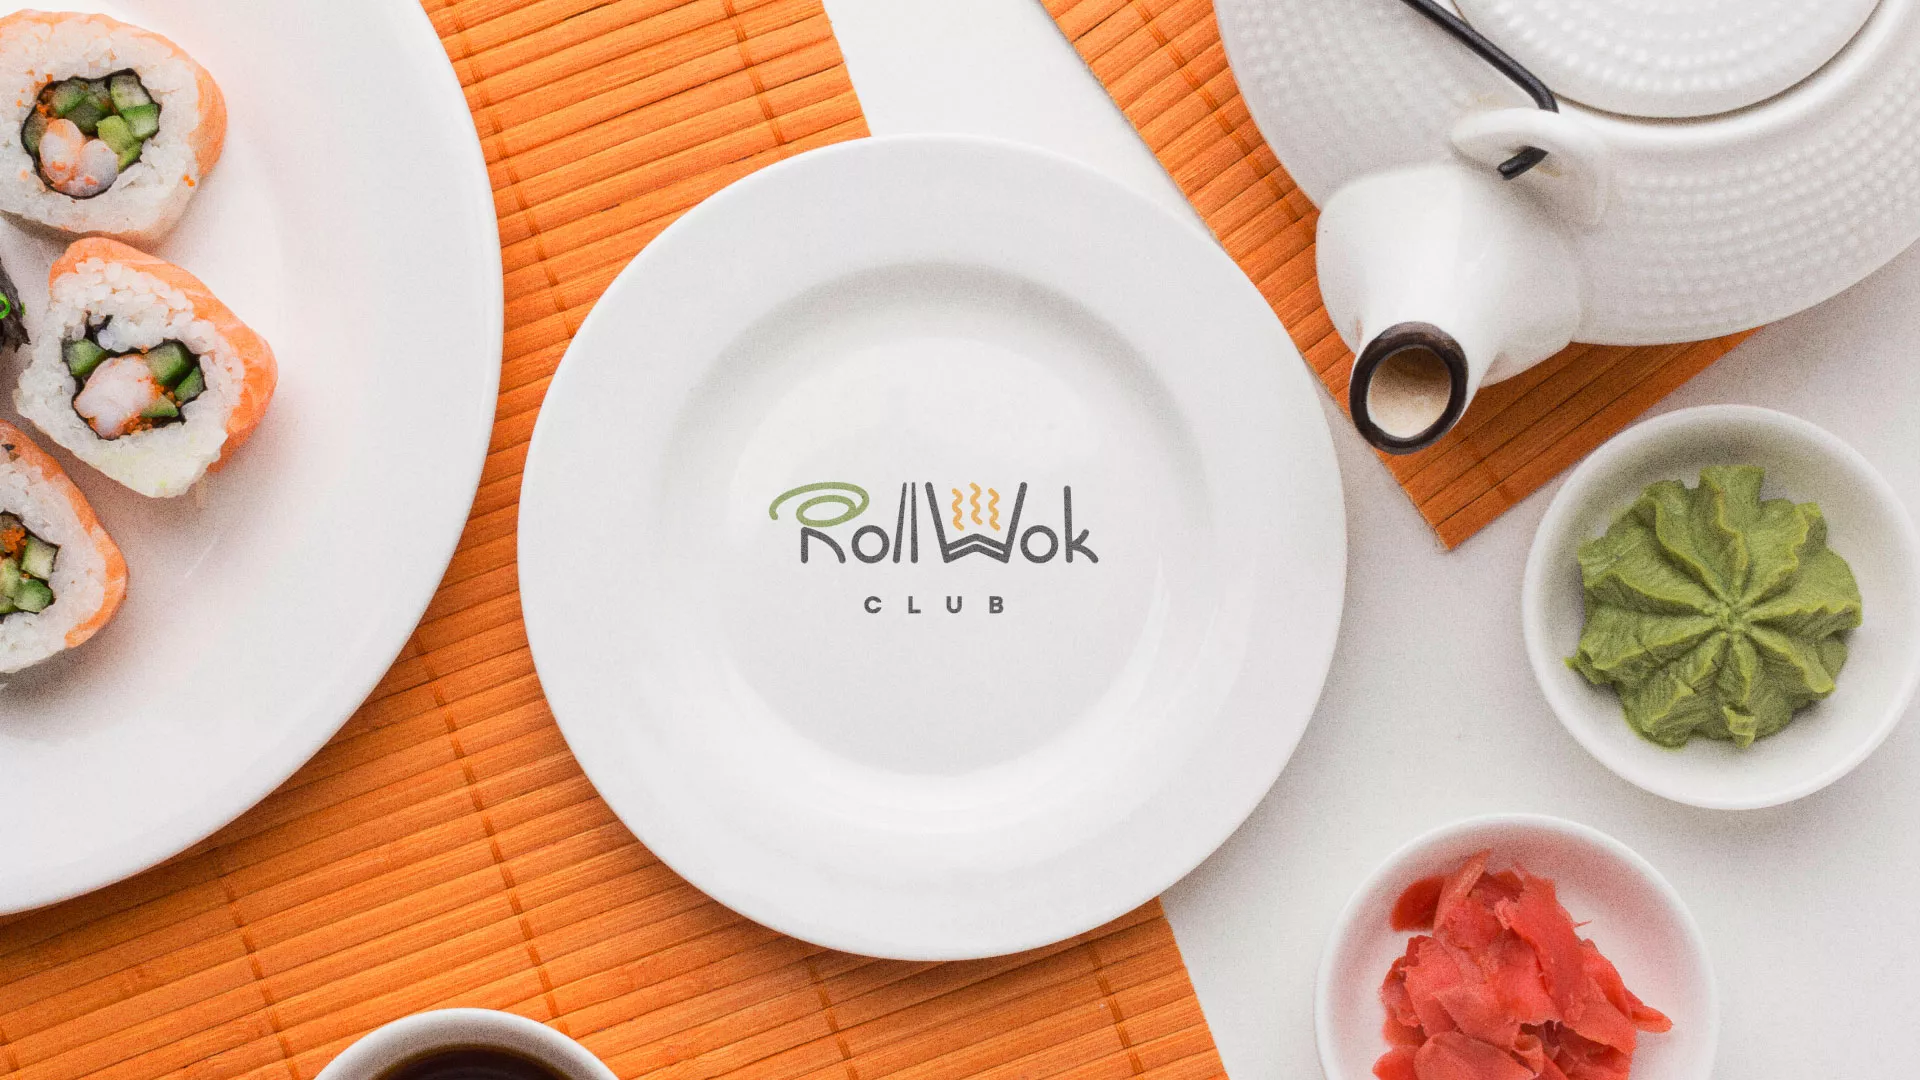 Разработка логотипа и фирменного стиля суши-бара «Roll Wok Club» в Рыбном